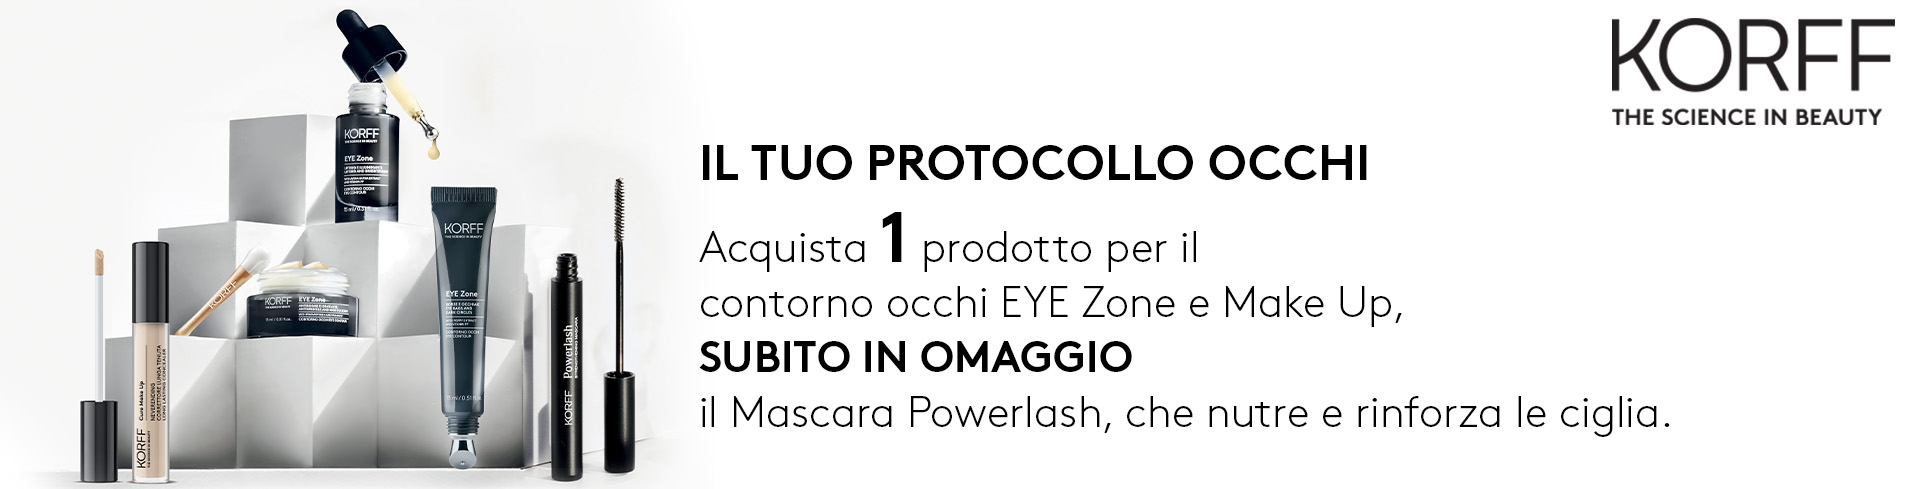 banner promozionale korff protocollo occhi: mascara in omaggio  desktop